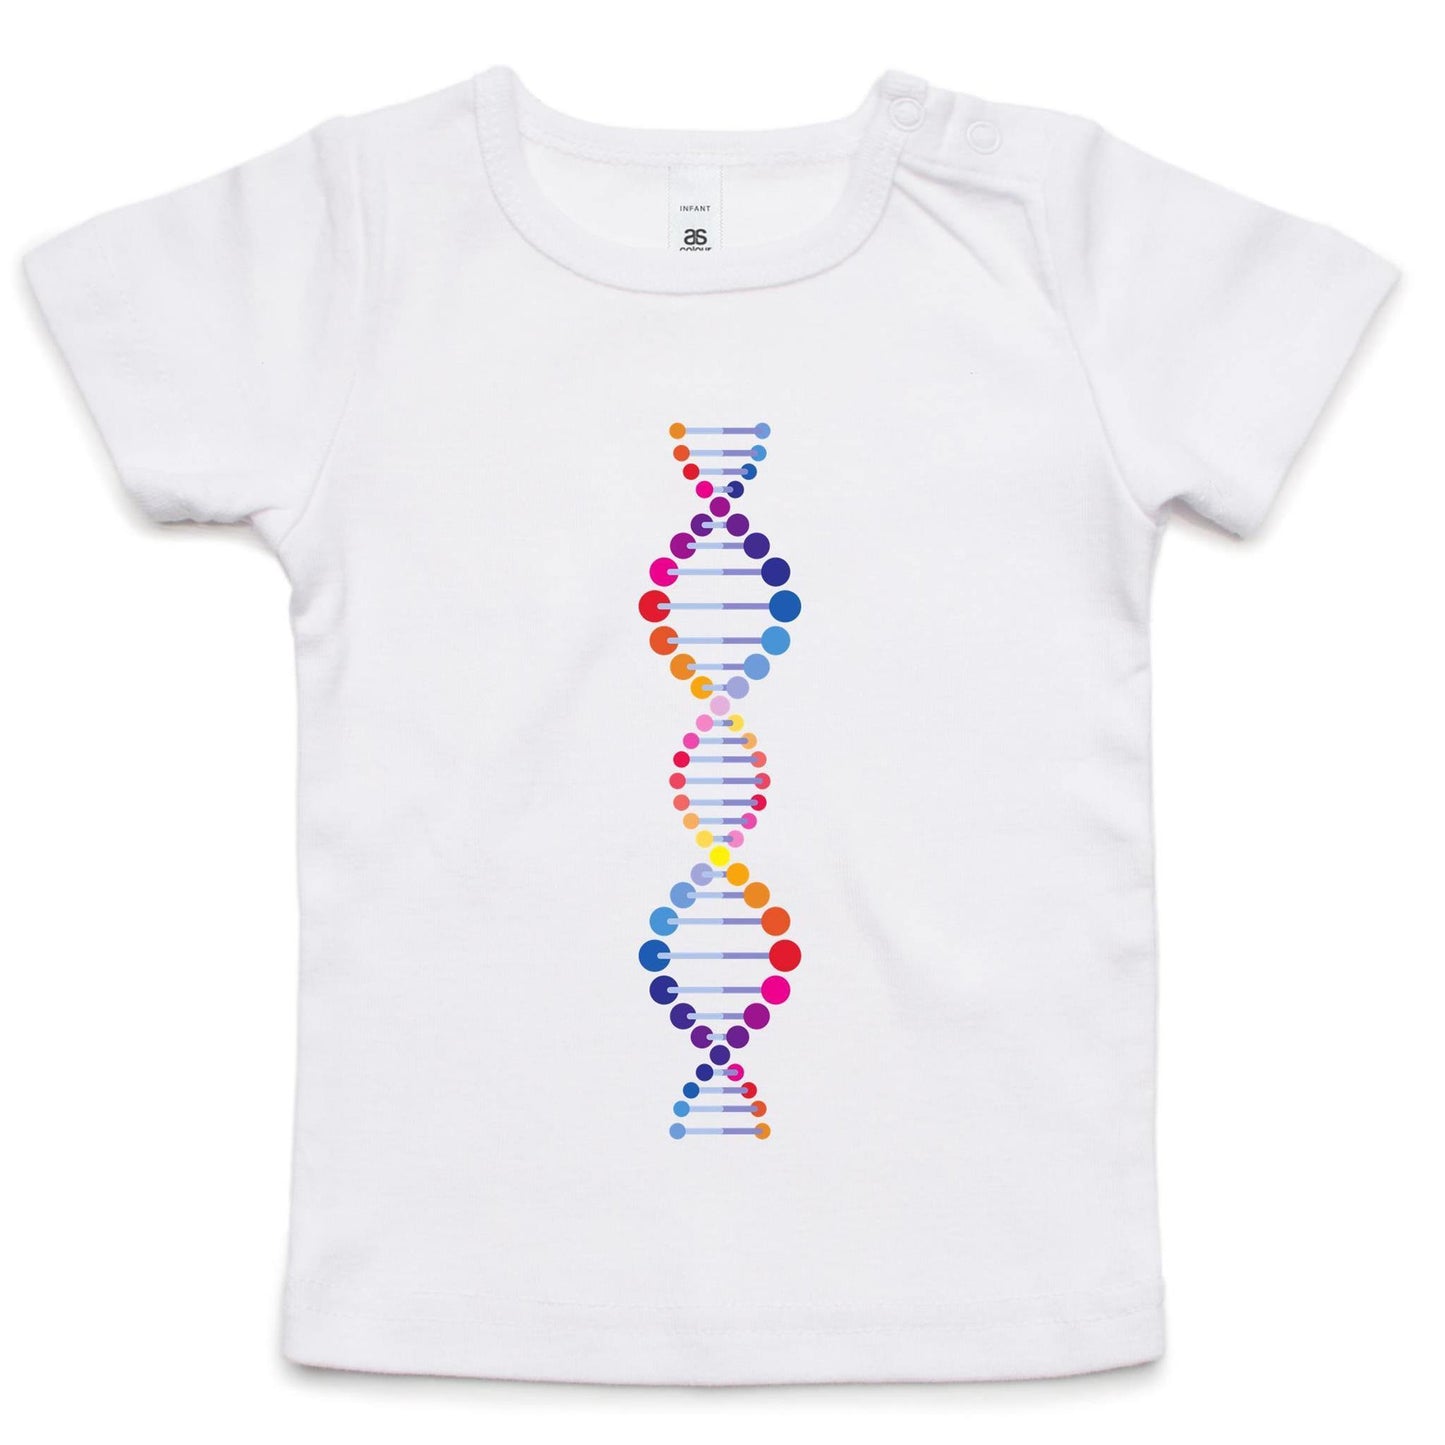 DNA - Baby T-shirt White Baby T-shirt kids Science